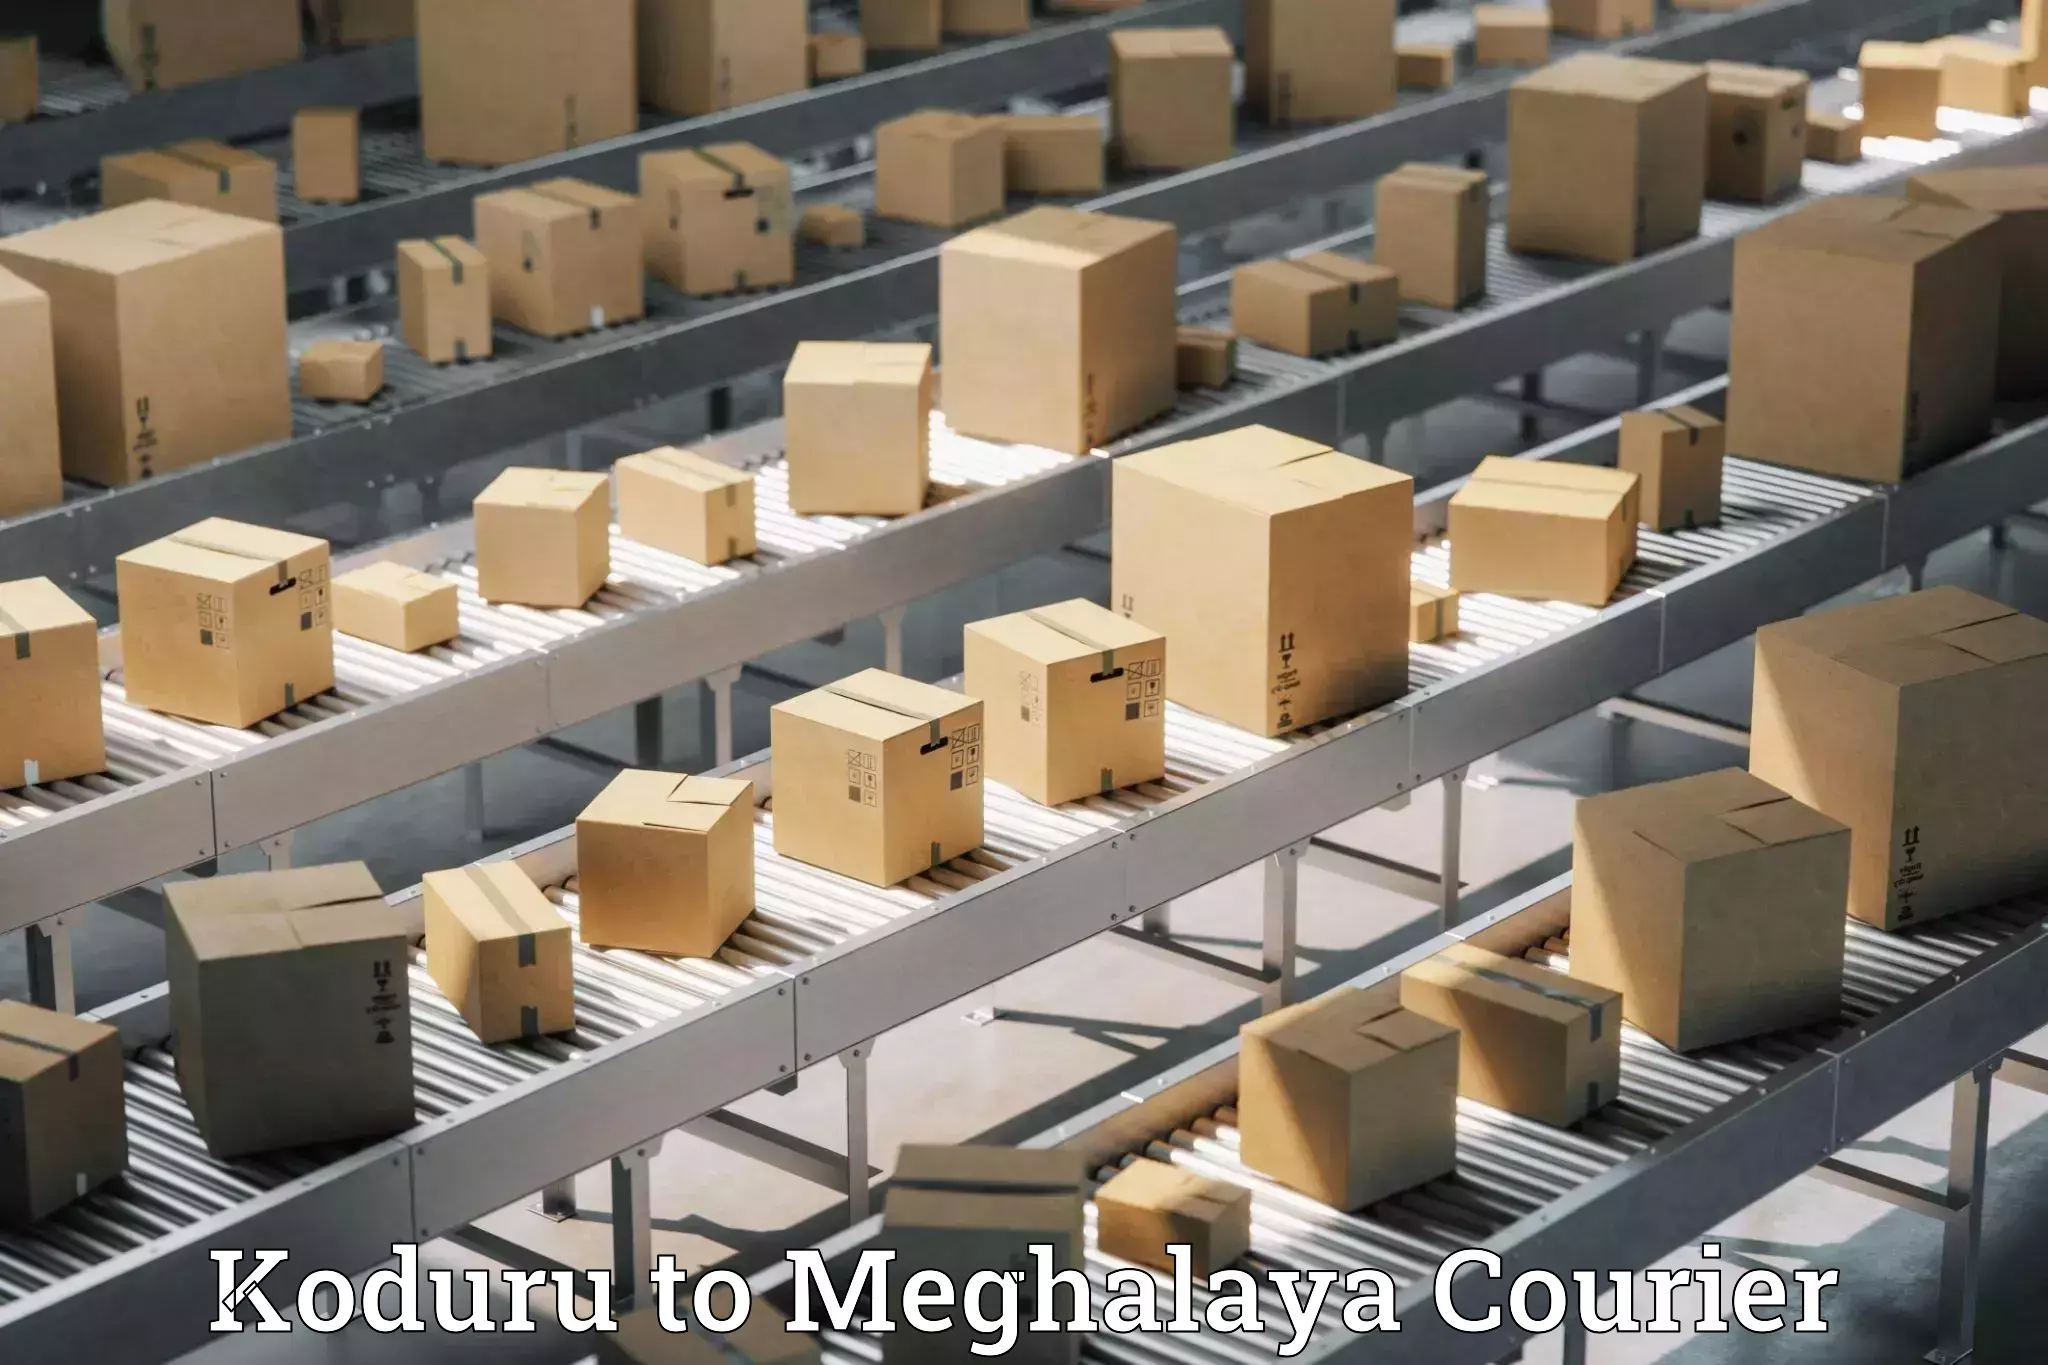 Easy return solutions Koduru to Meghalaya